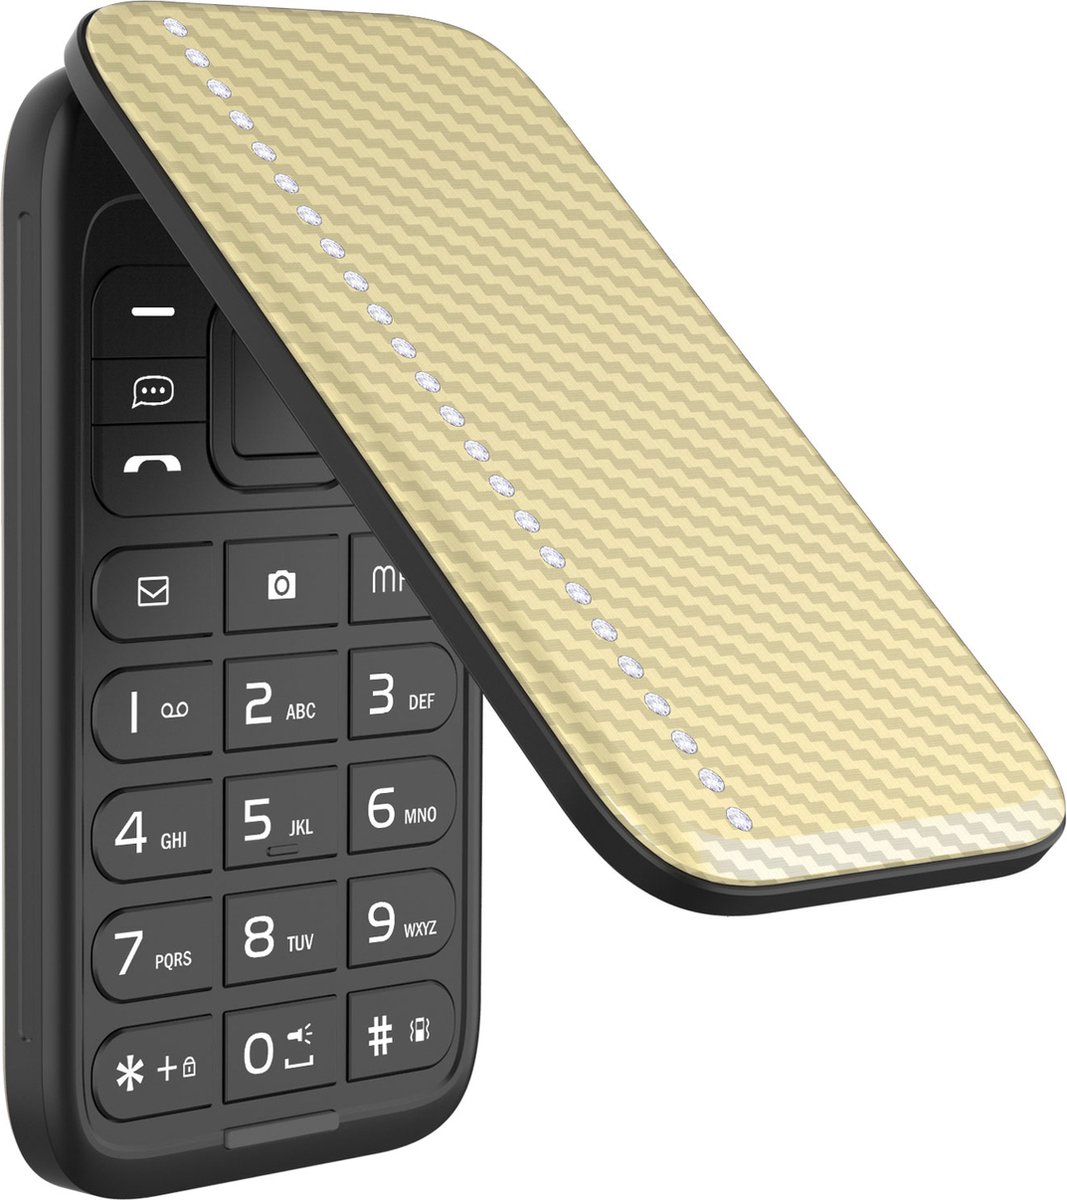 Samsung E1272 - Bleu foncé - Carte SIM gratuite incluse